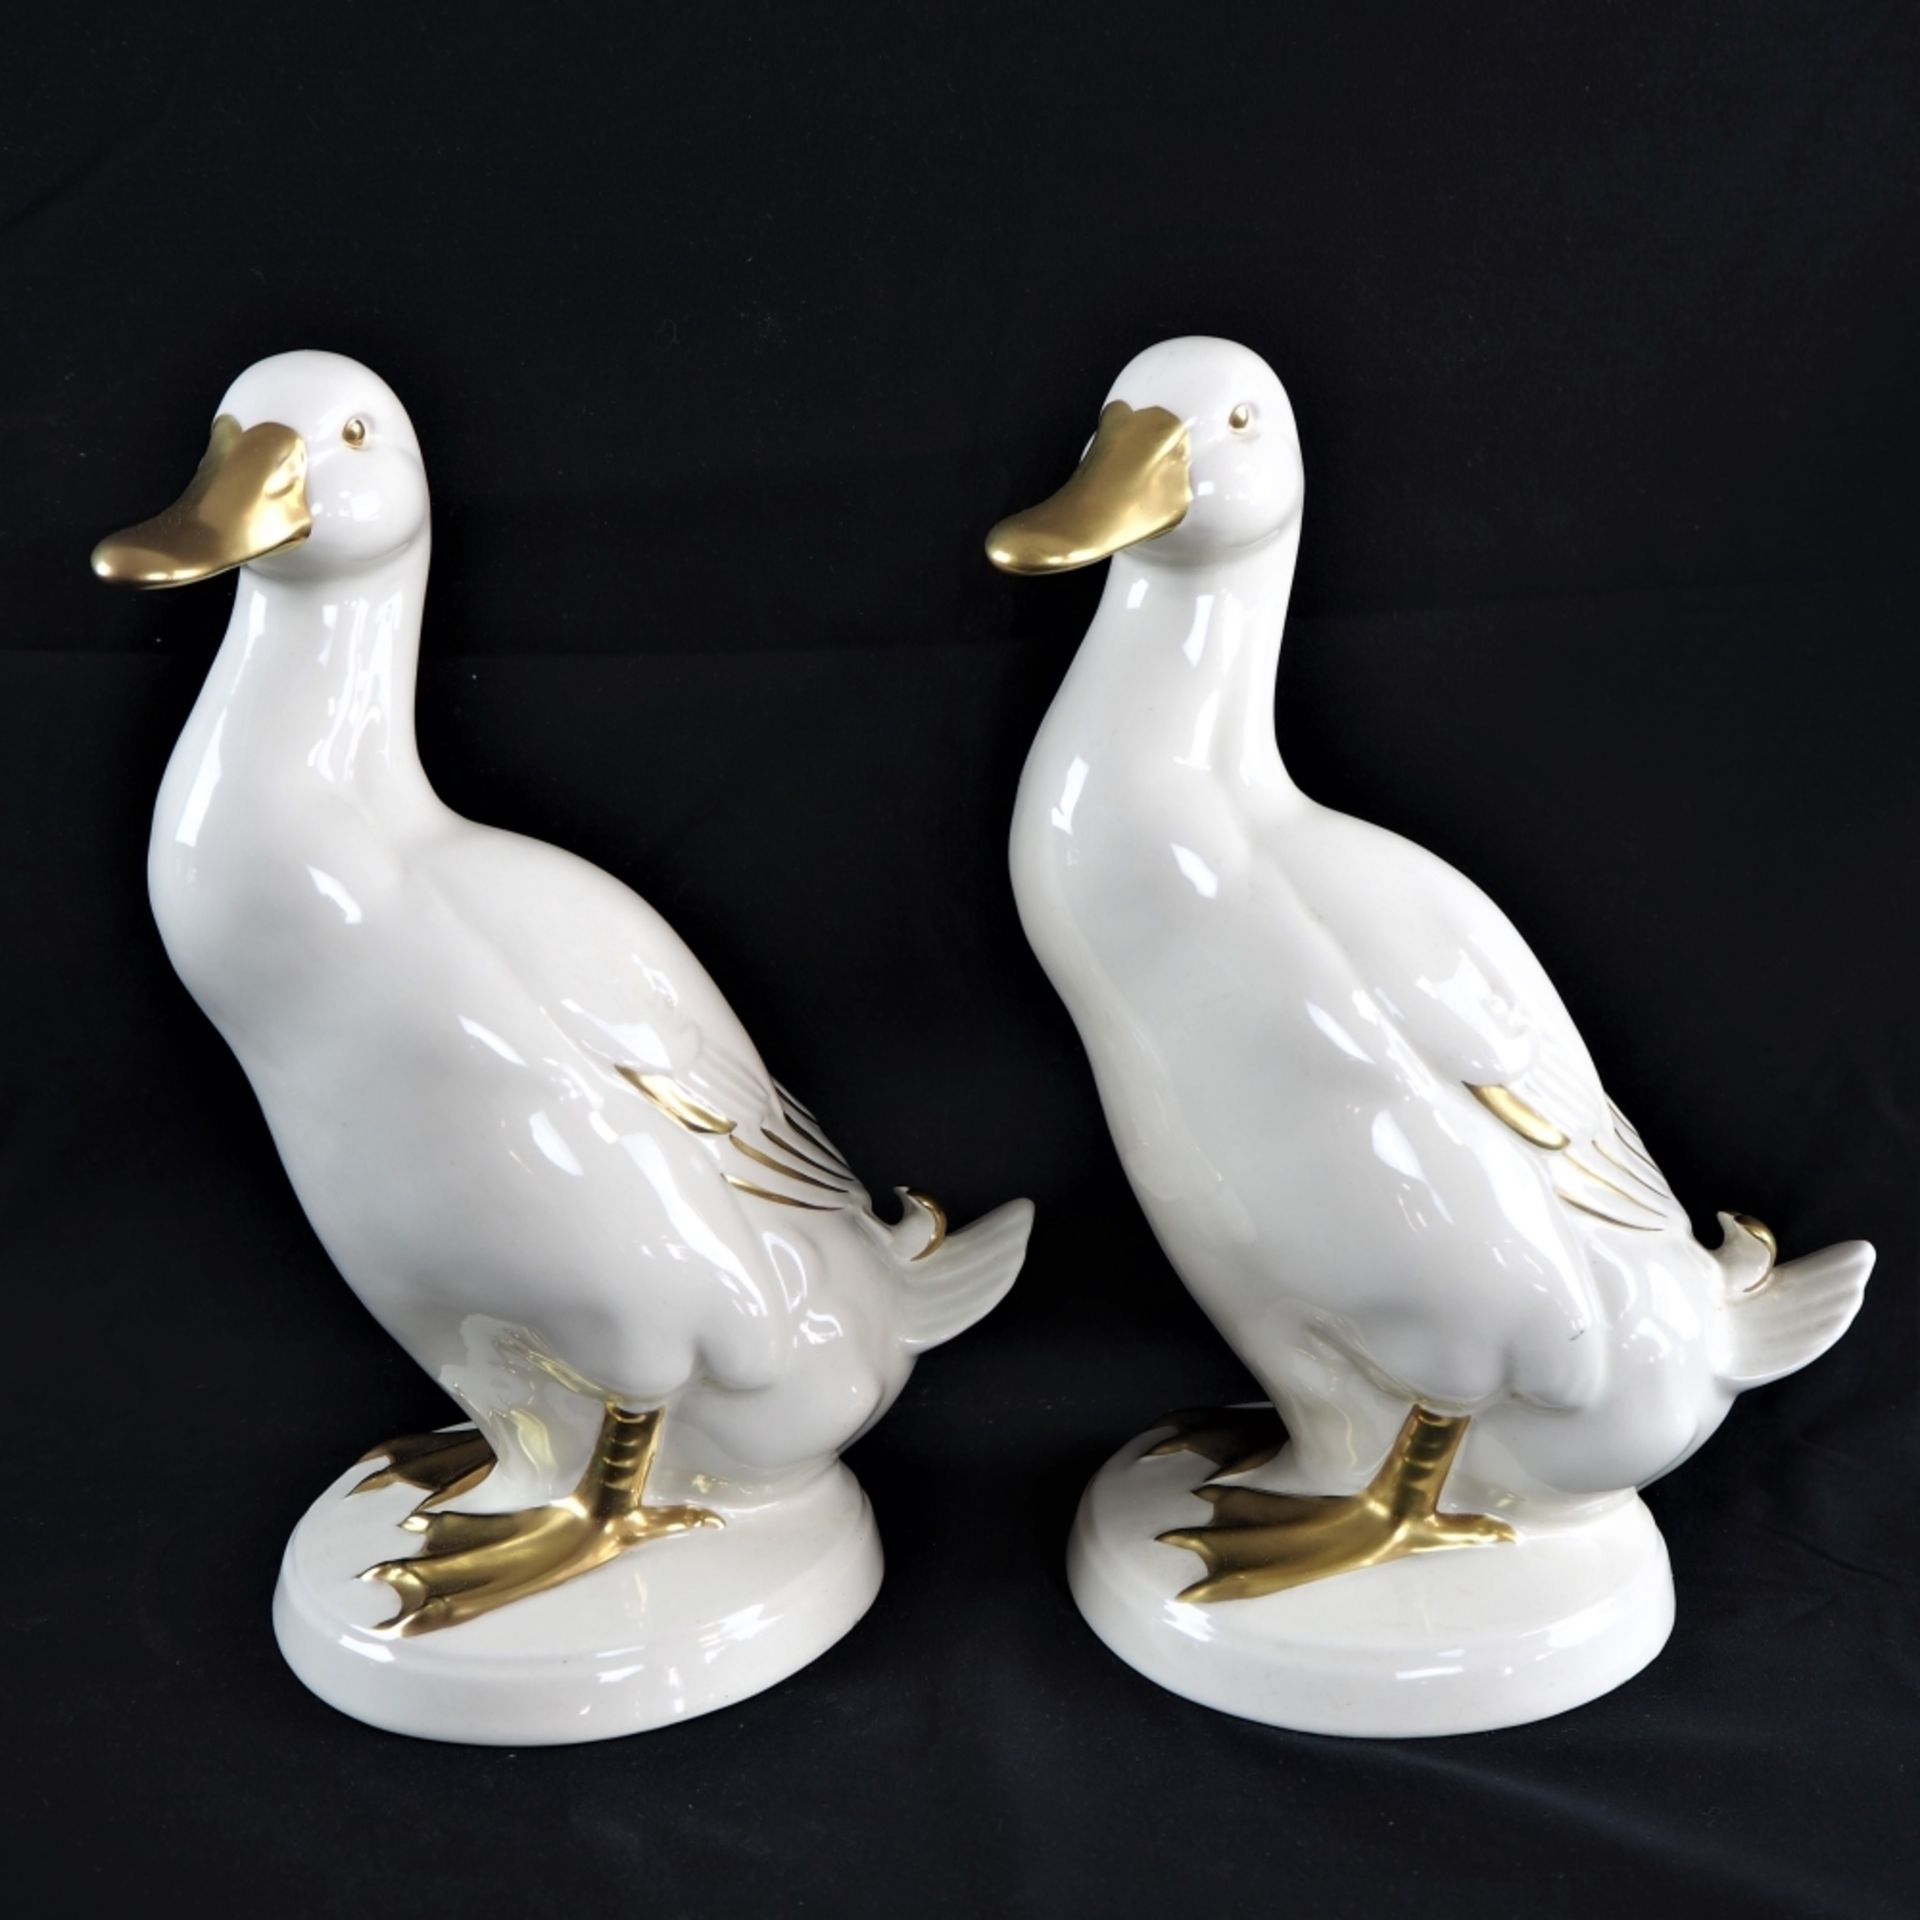 Paar Enten, Keramikweiß und golden glasiert, auf runder Plinthe stehend. Um 1970, am Bod